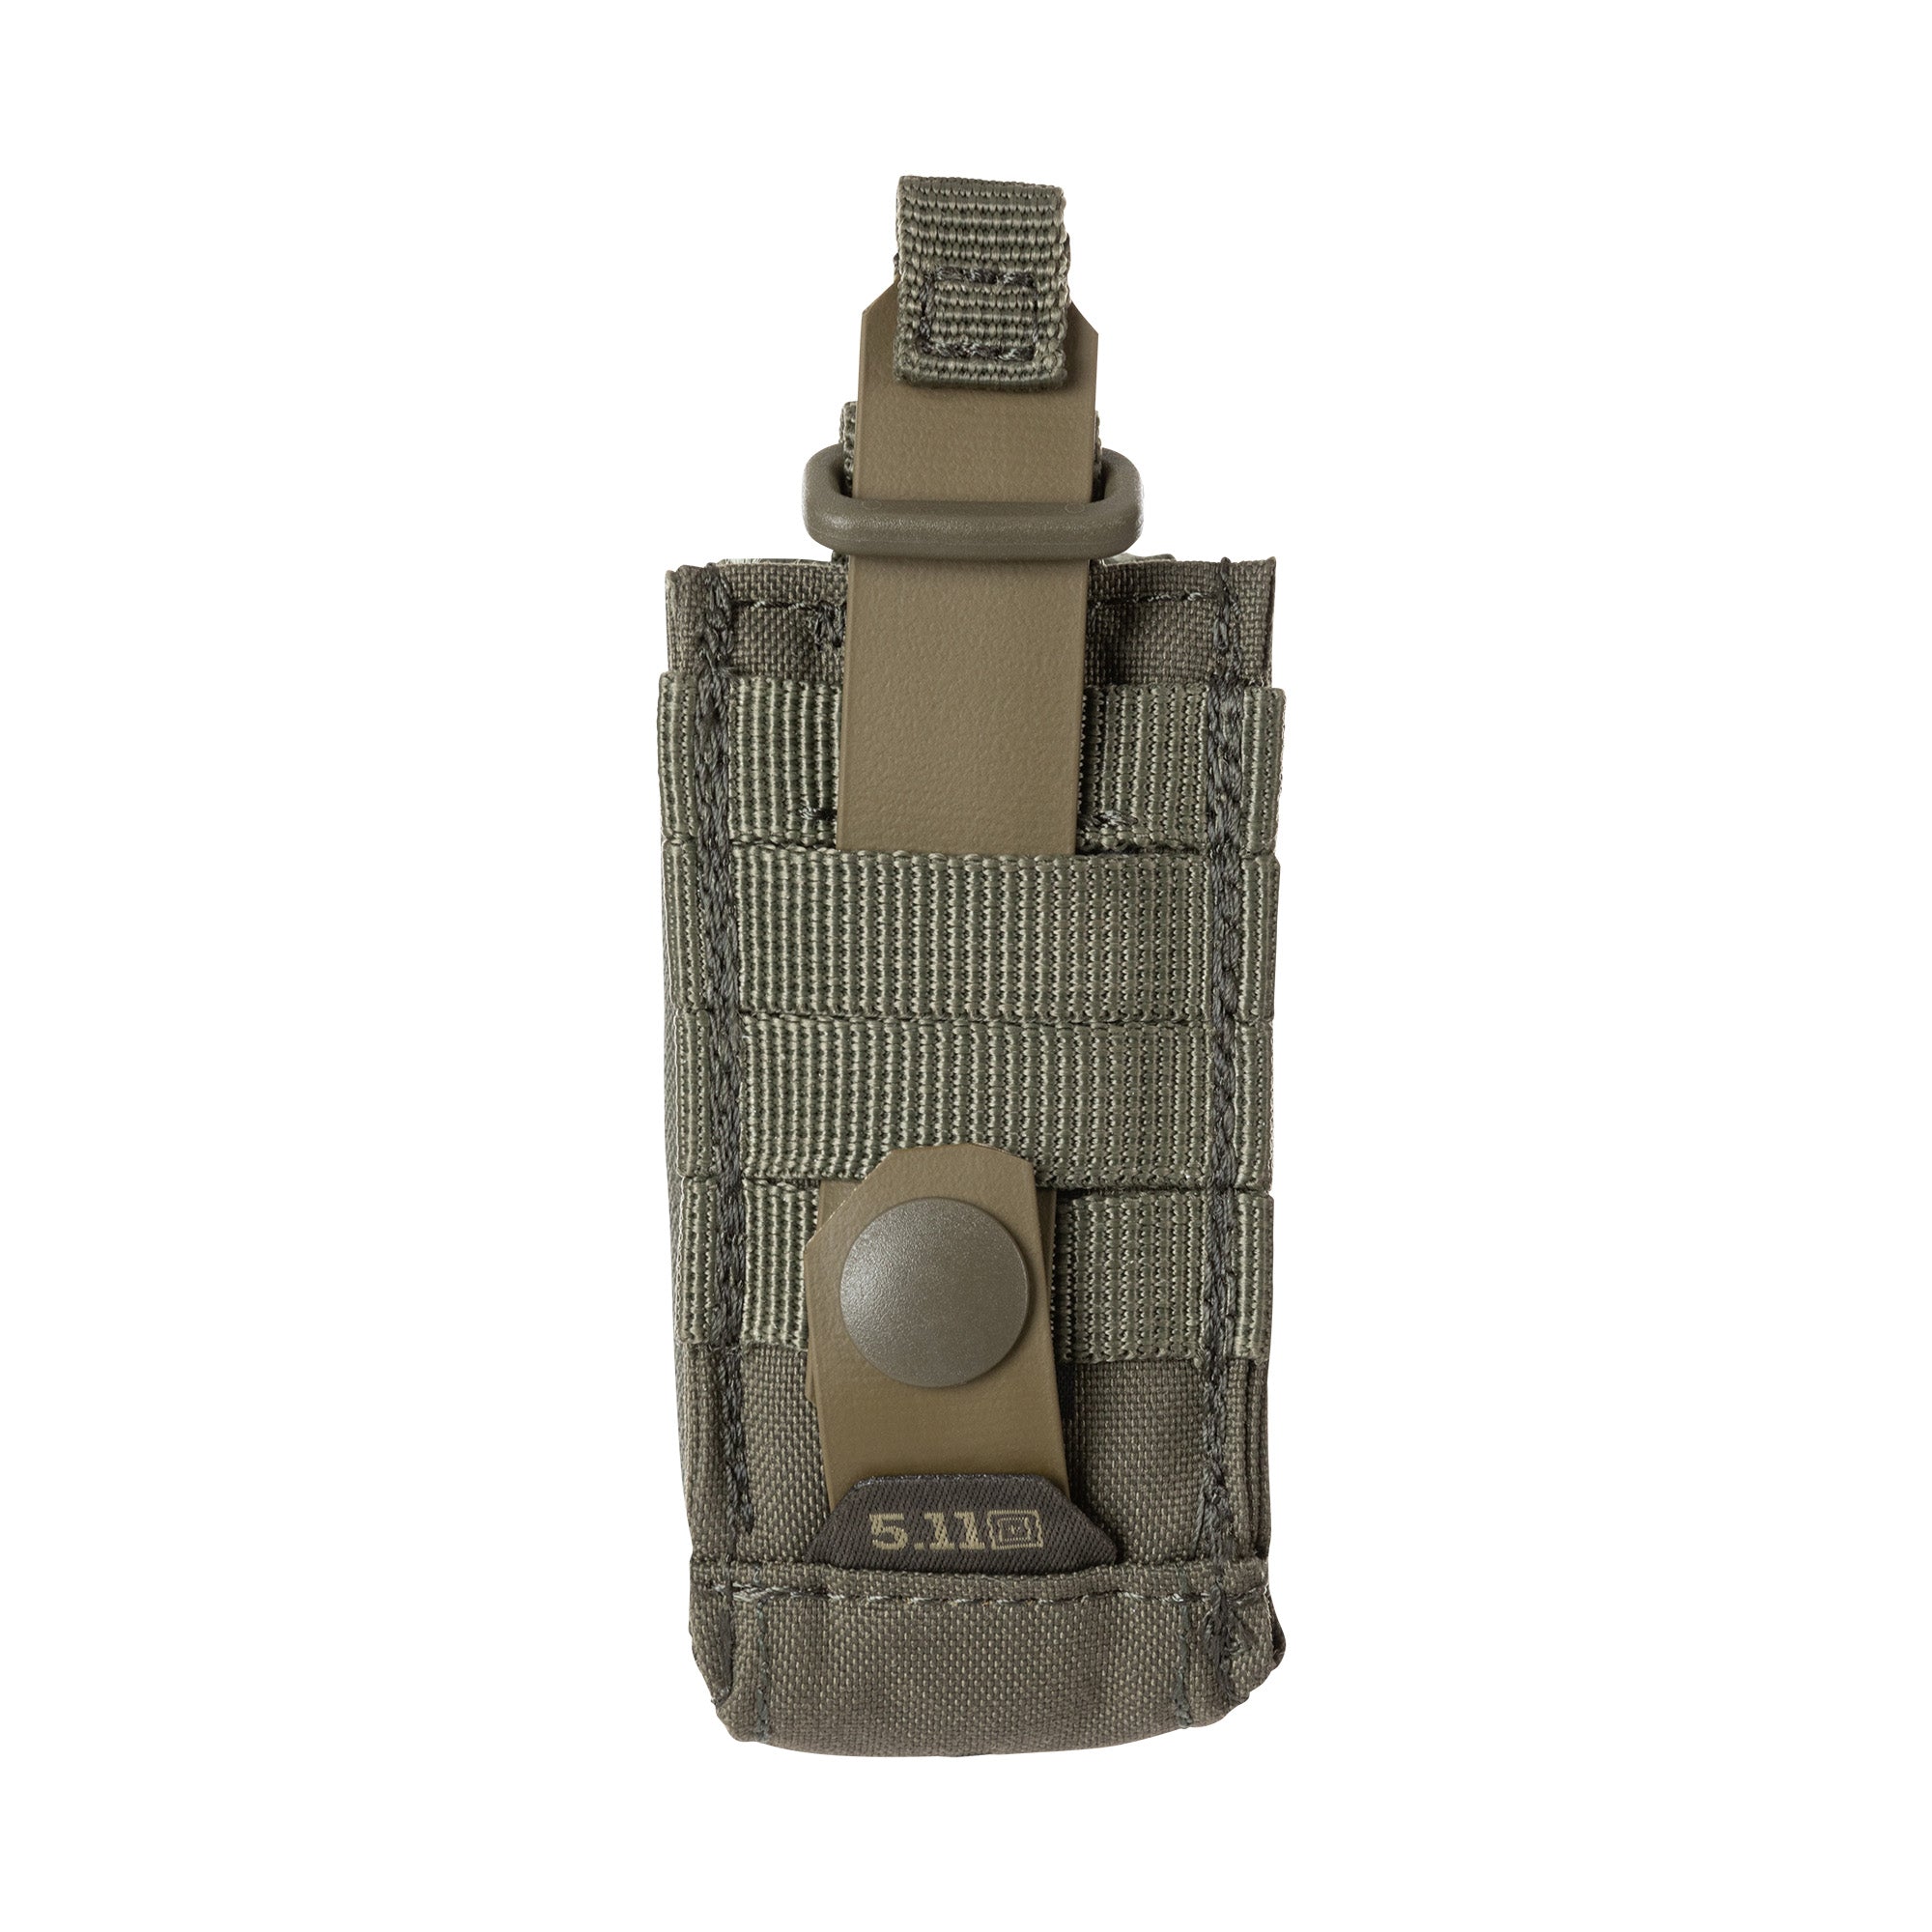 5.11 Tactical Flex Single Pistol Mag Pouch 2.0 Accessories 5.11 Tactical Tactical Gear Supplier Tactical Distributors Australia